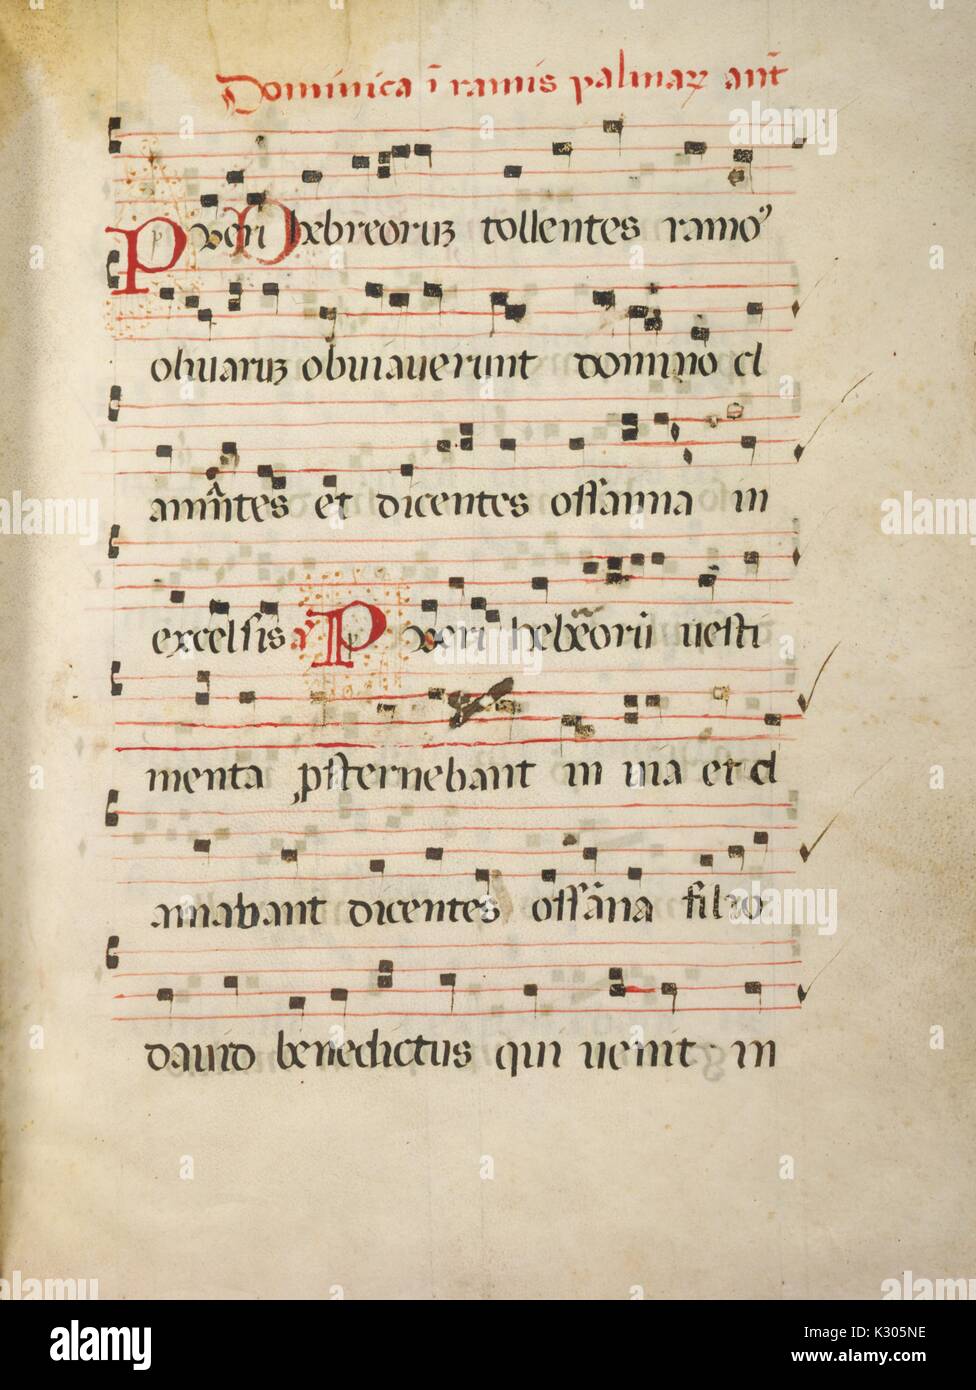 Manuscrit enluminé de la musique à partir de la page 'Dominica dans ramis palmarum antiphonarium, ''un antiphonary latine de l'Église catholique, 2013. Banque D'Images